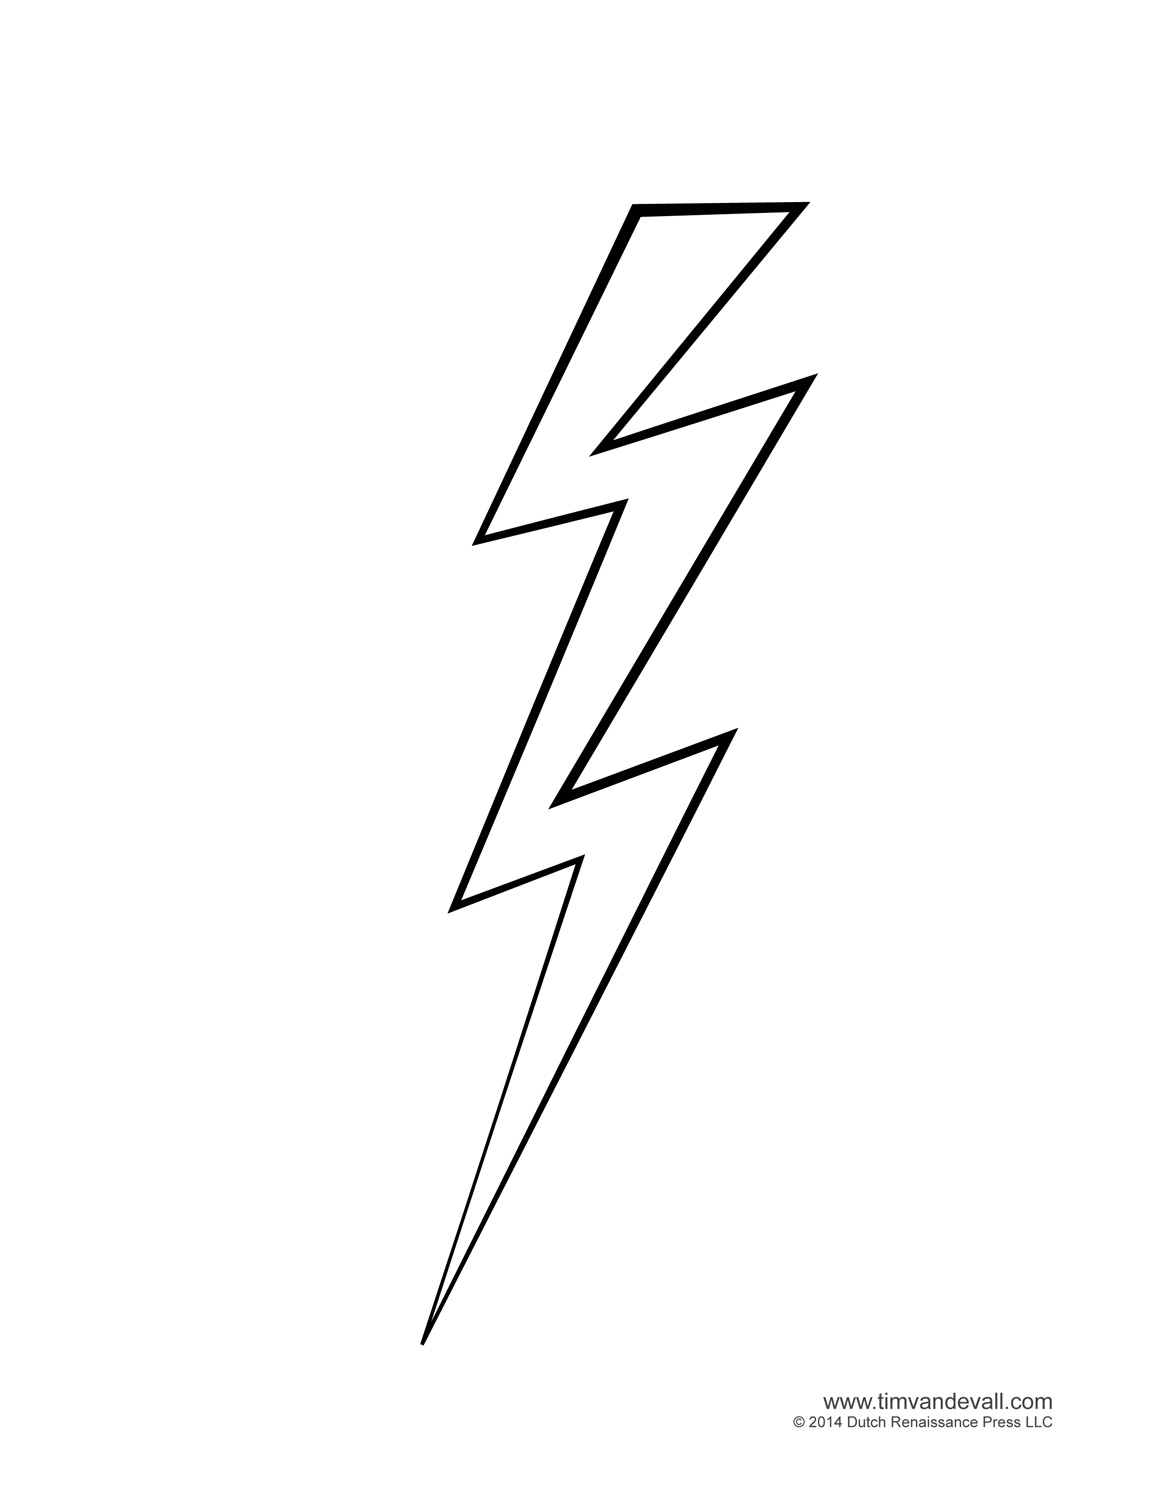 White lightning bolt clip art - Lightning Bolt Clip Art